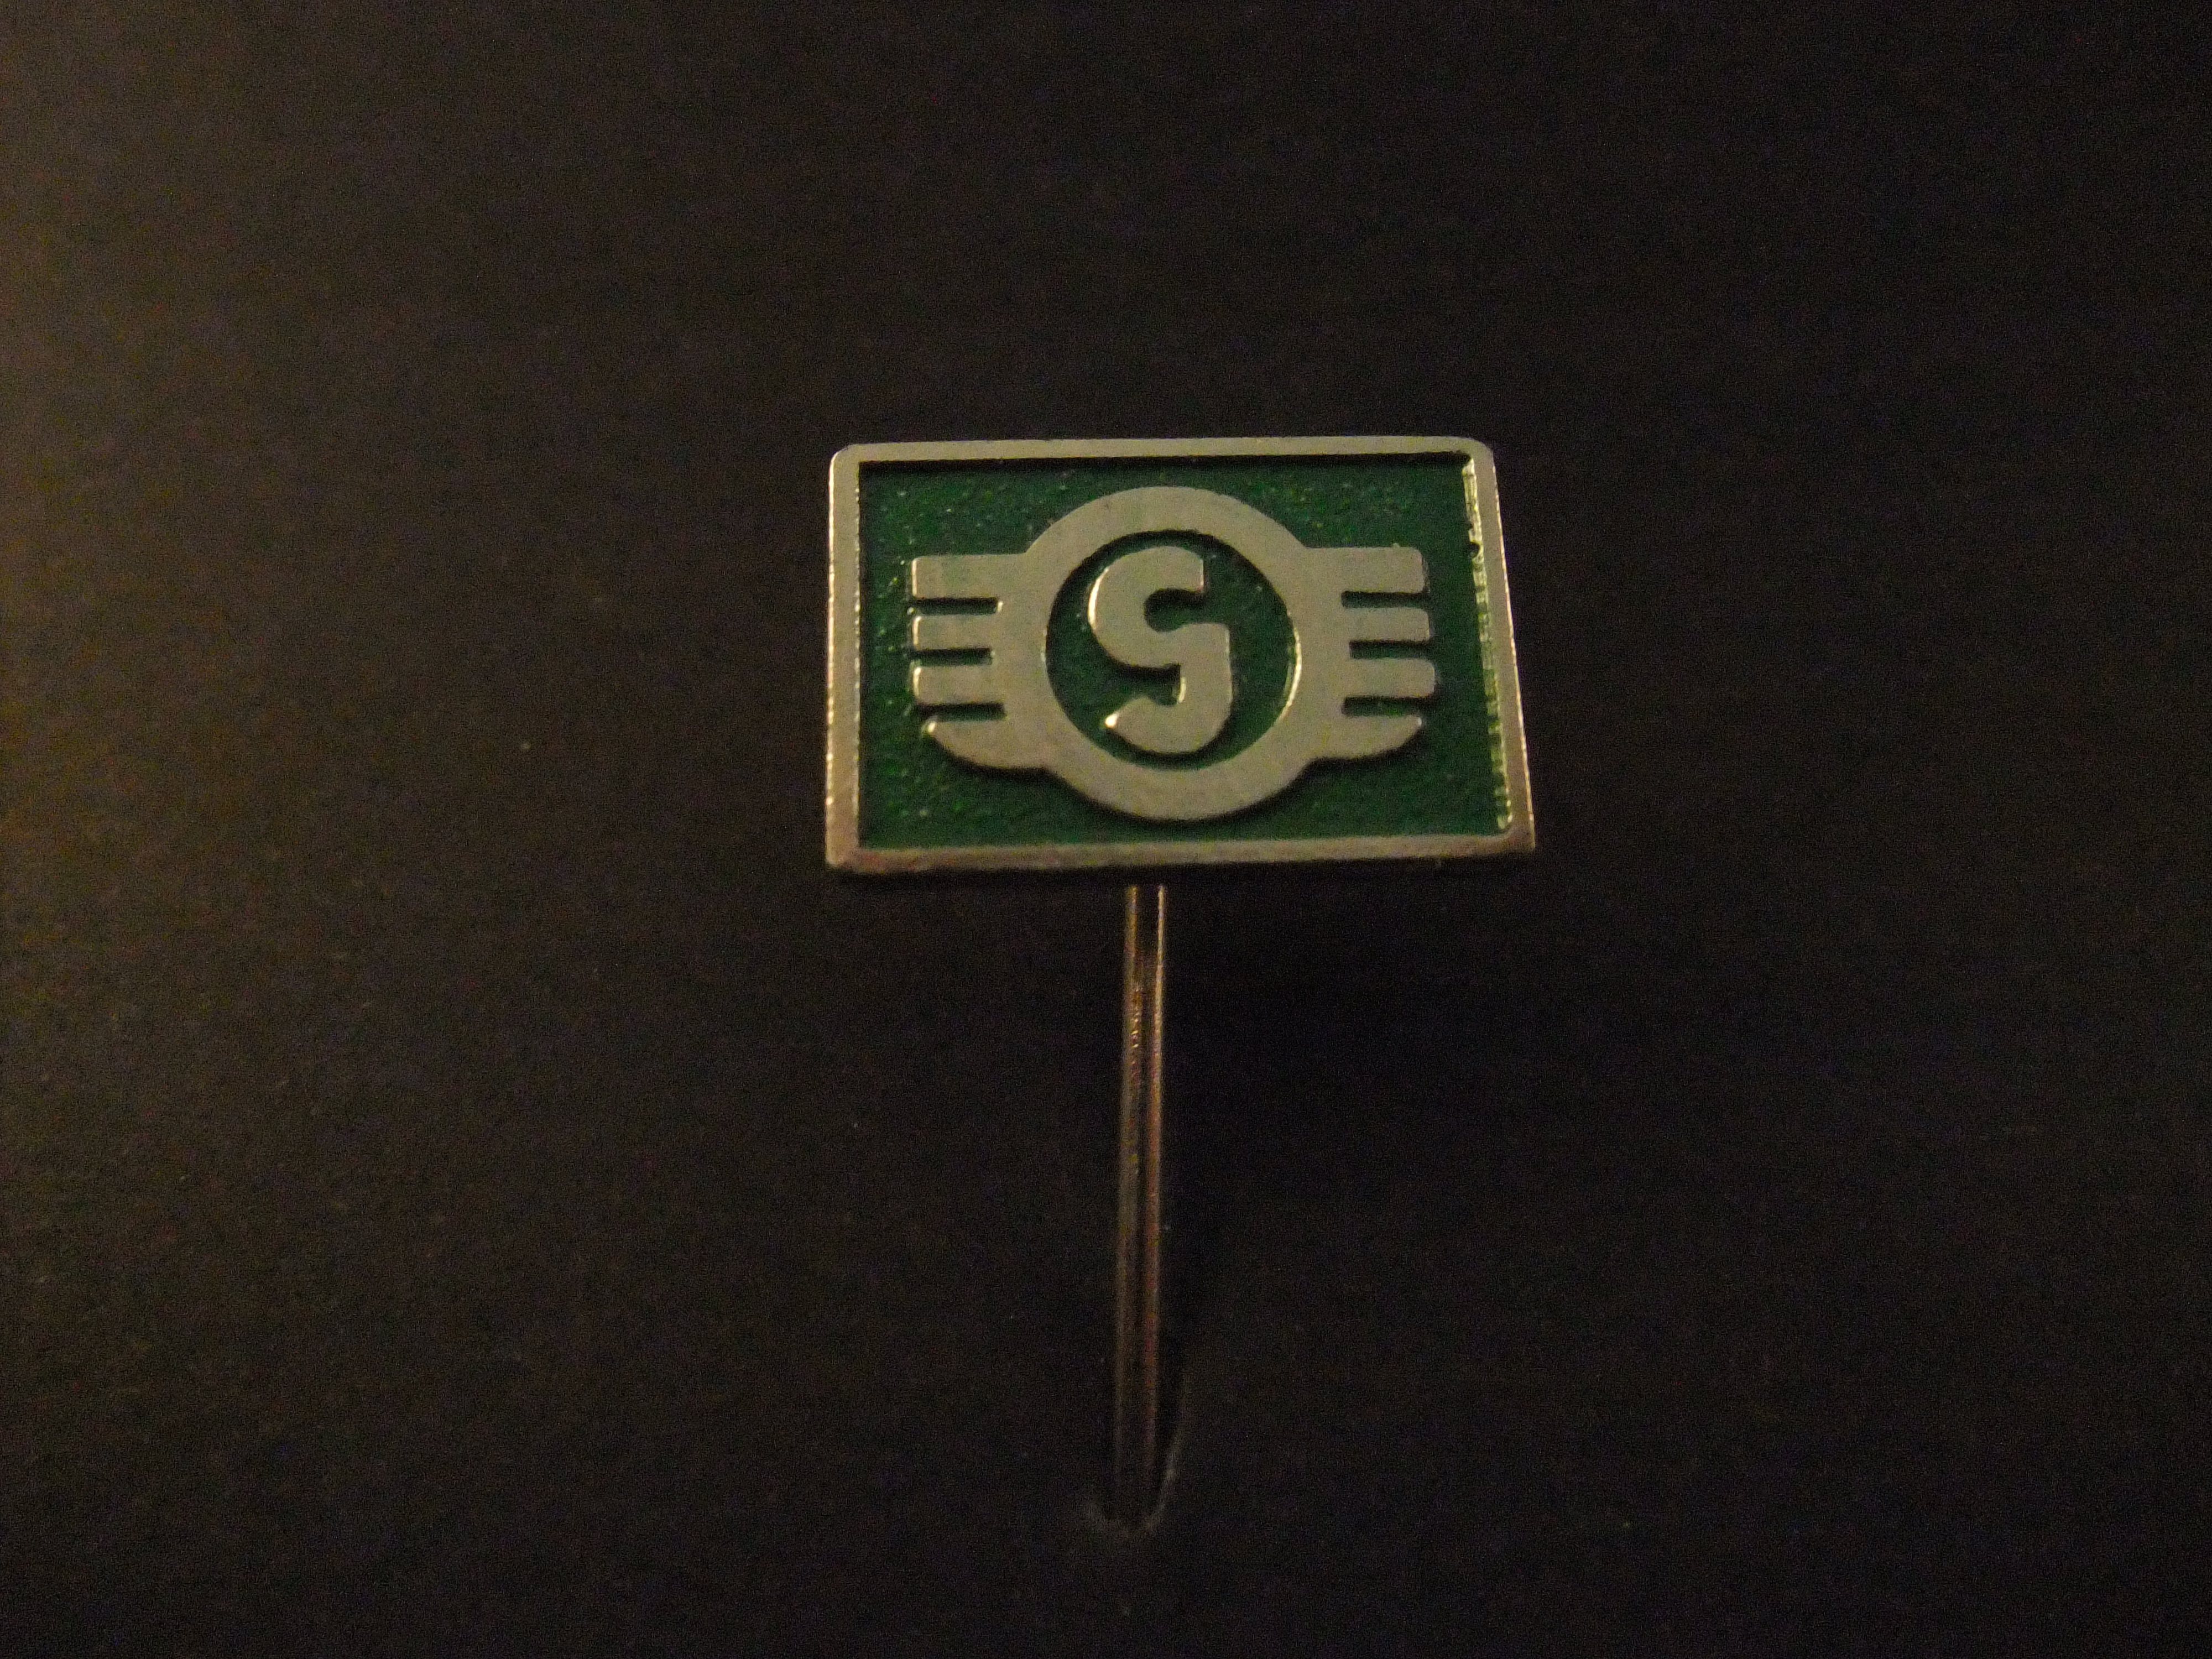 Goggomobil dwergauto geproduceerd tussen 1955 en 1969 logo groen